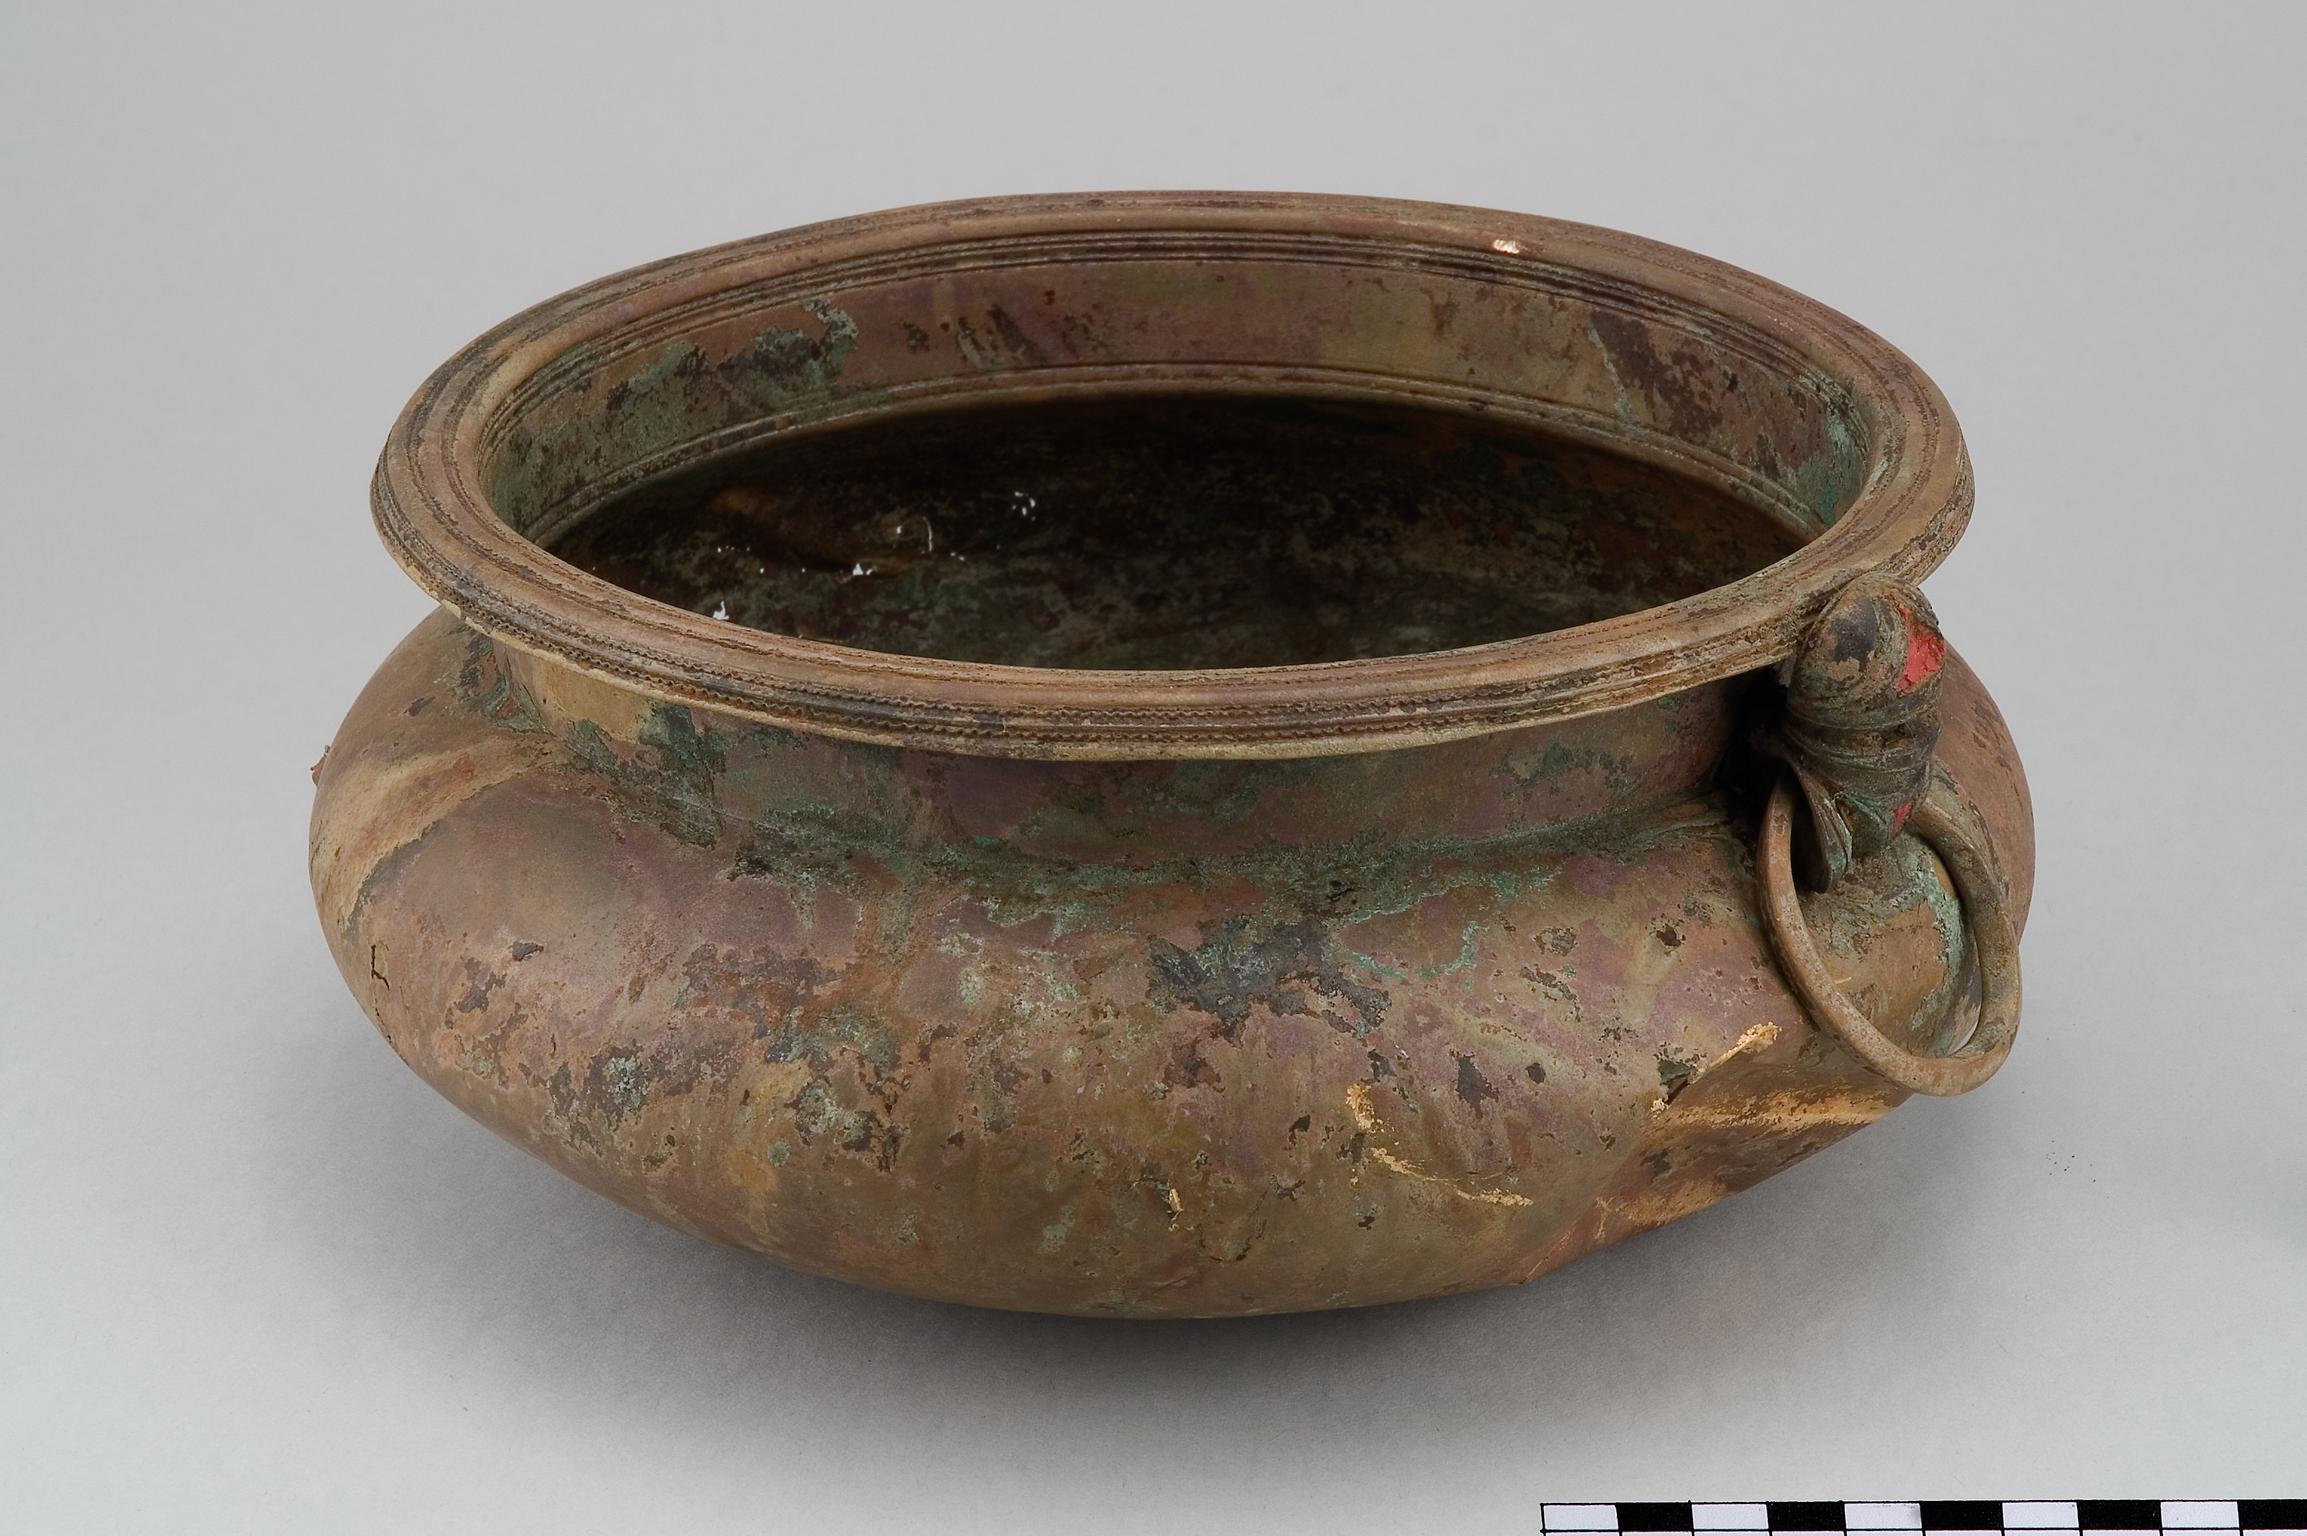 Iron Age copper alloy bowl